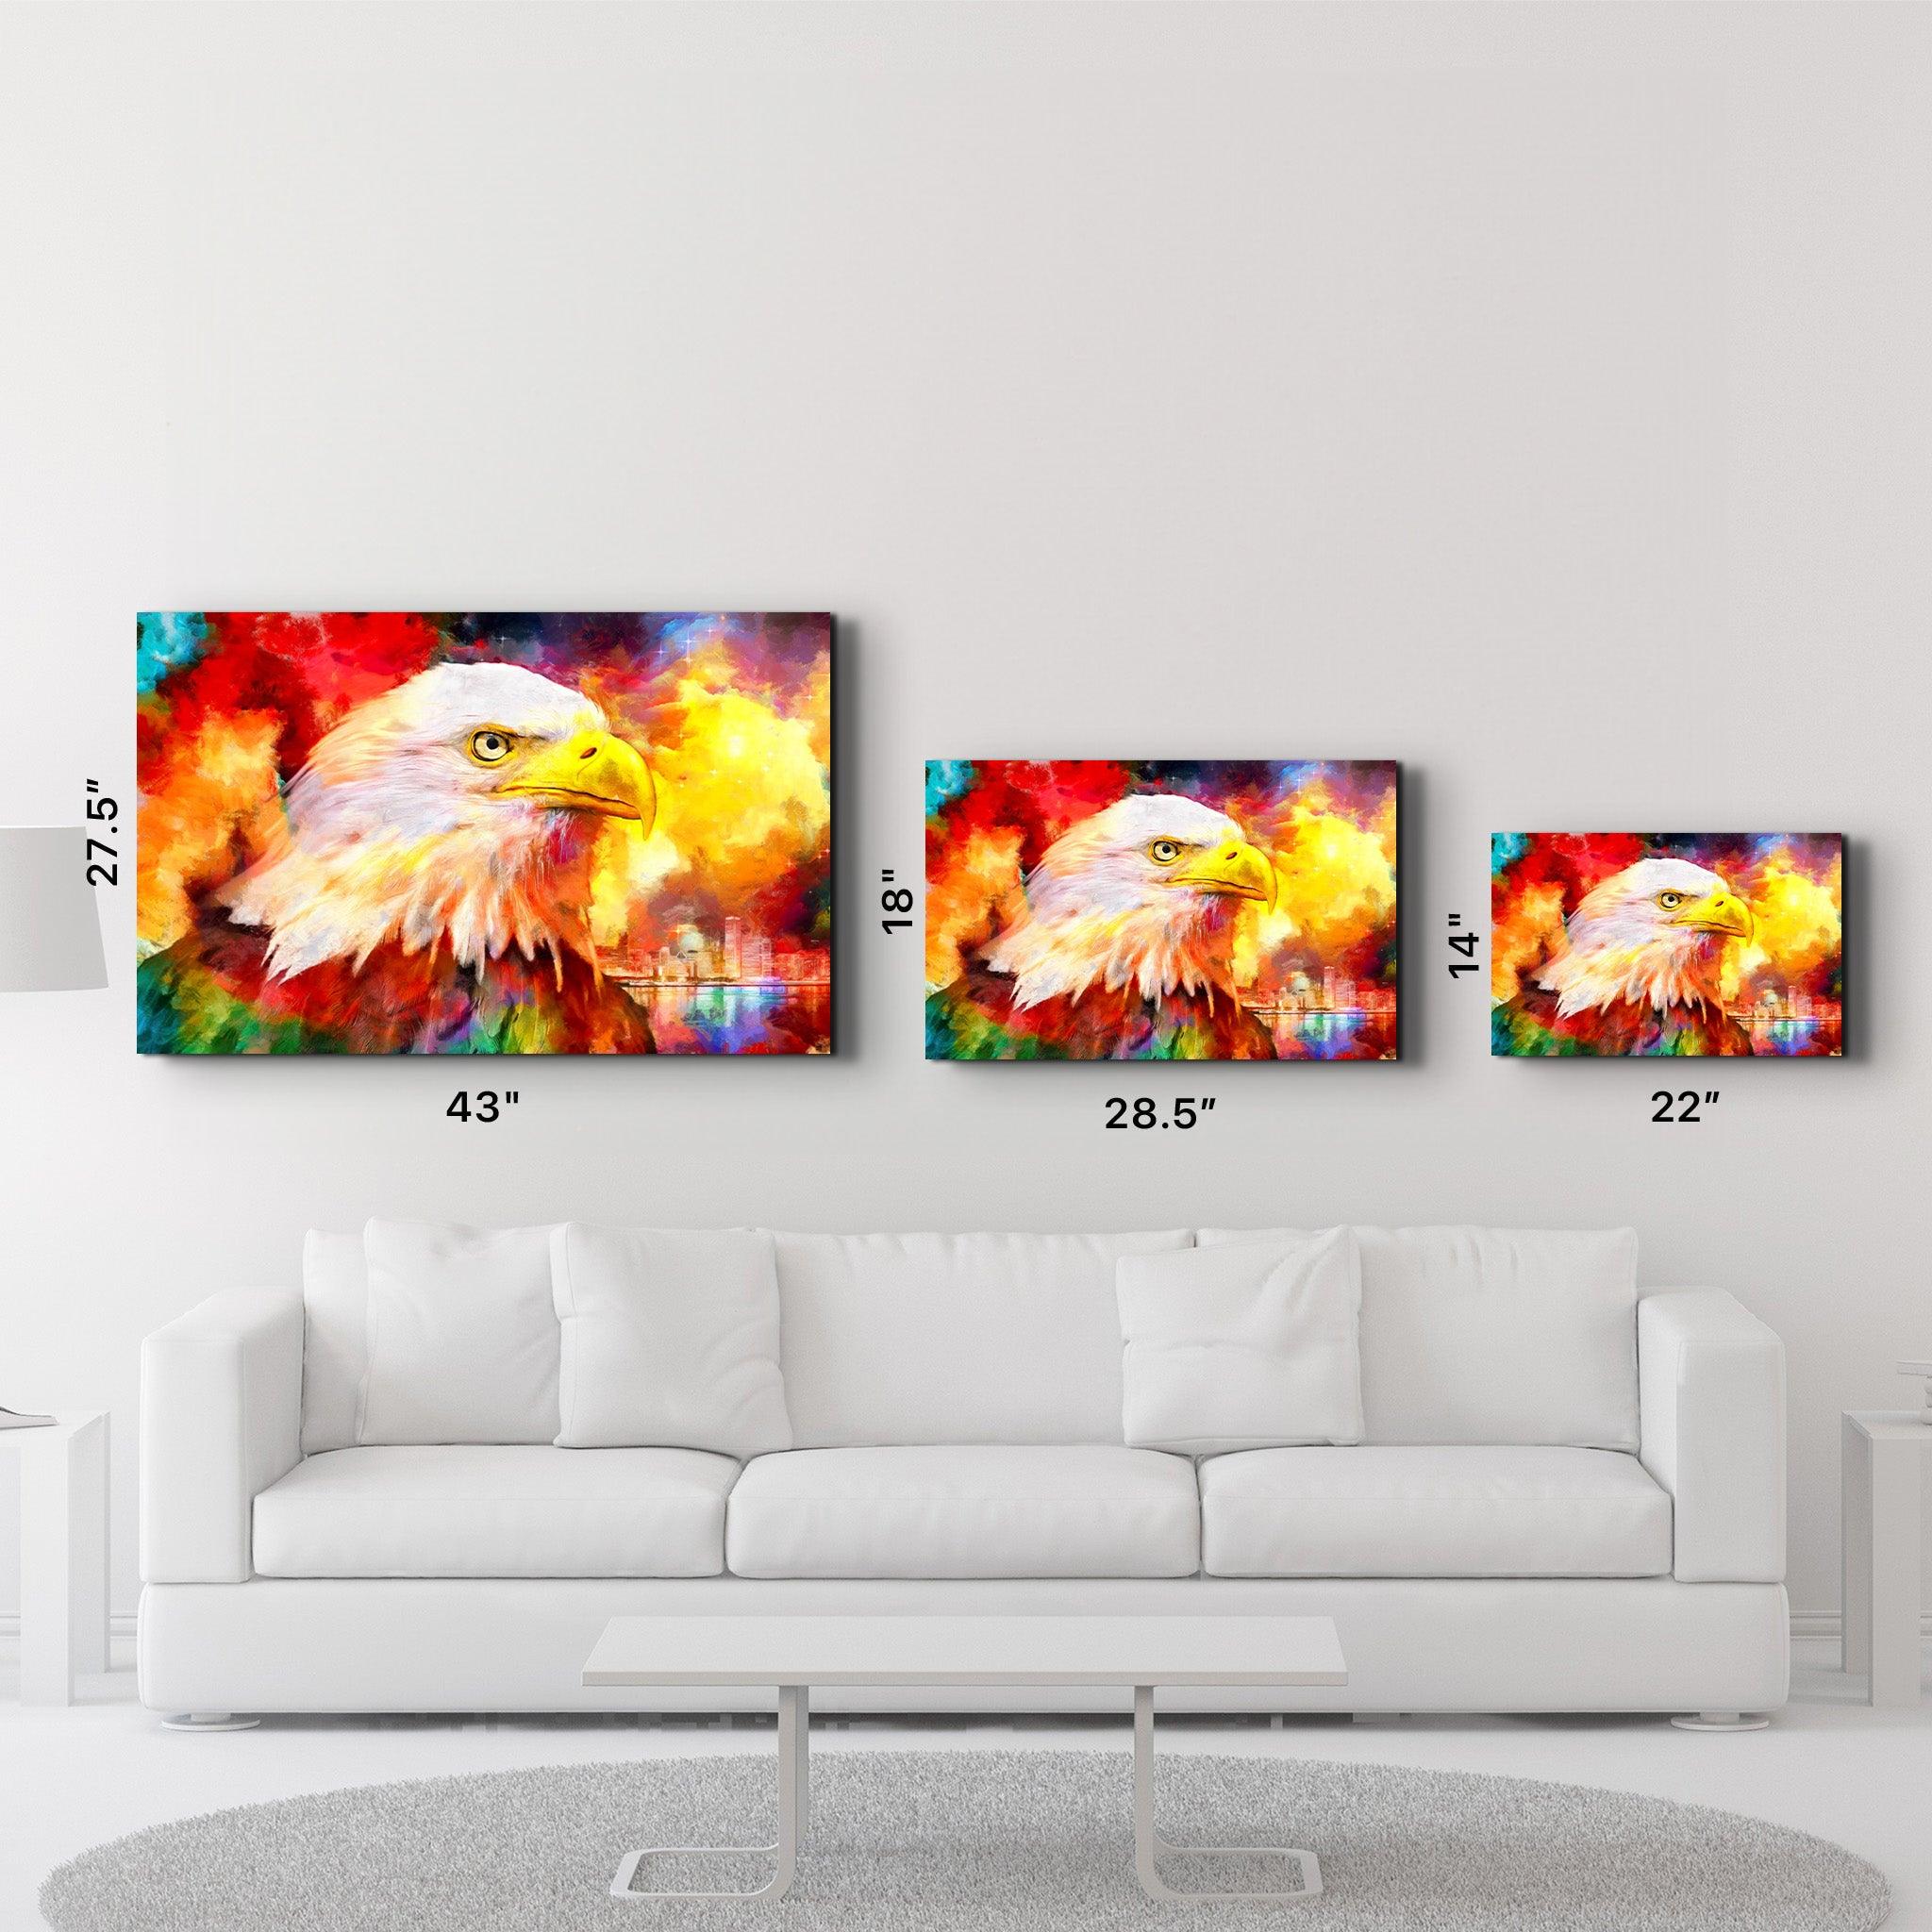 Abstract Colorful Eagle | Glass Wall Art - ArtDesigna Glass Printing Wall Art